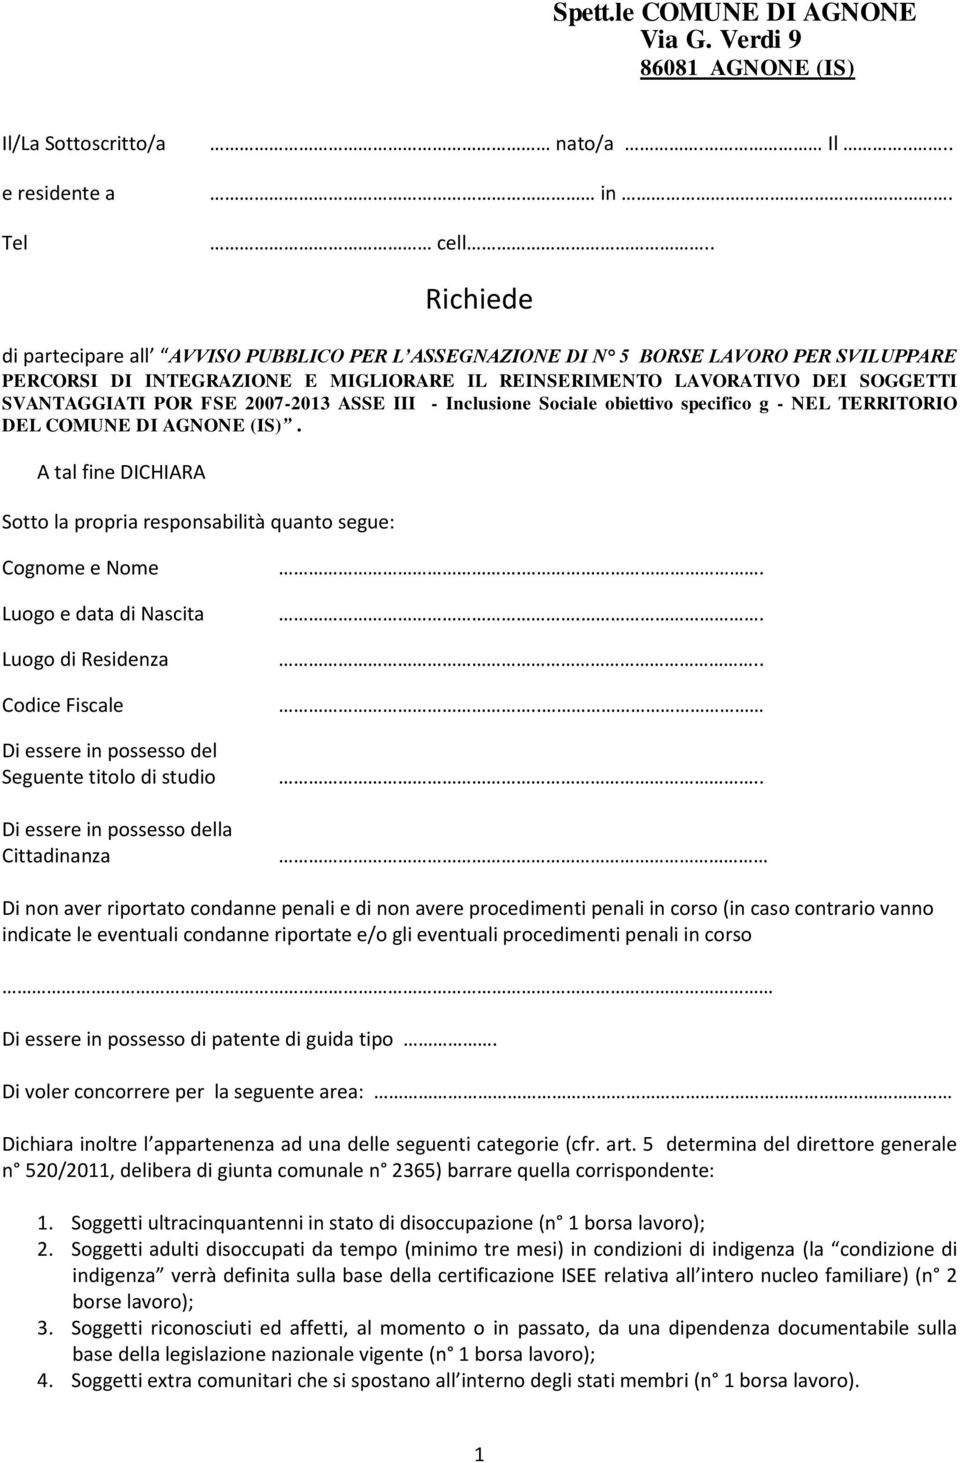 2007-2013 ASSE III - Inclusione Sociale obiettivo specifico g - NEL TERRITORIO DEL COMUNE DI AGNONE (IS).